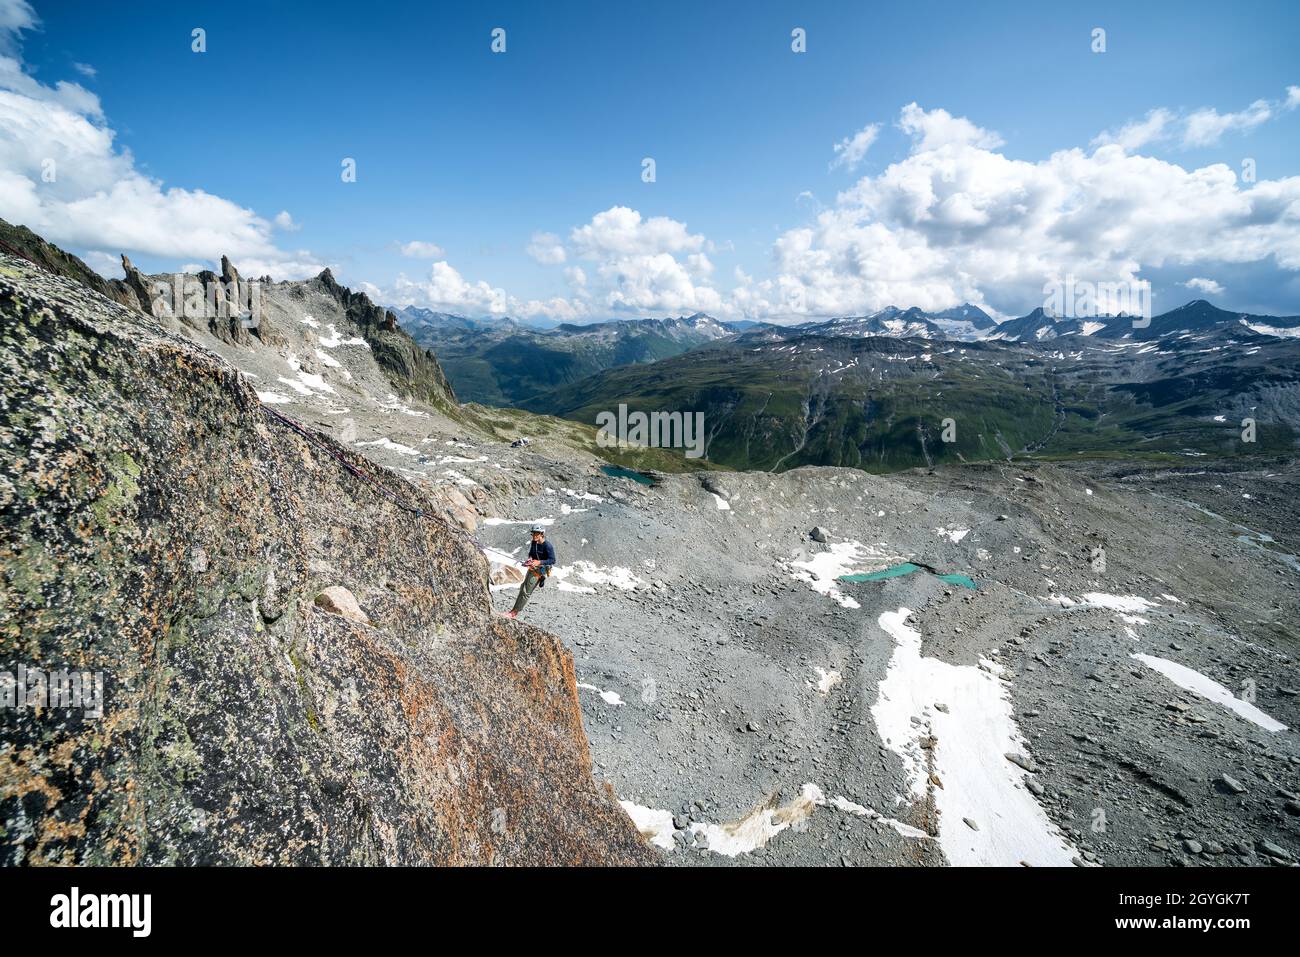 Rock climbing at Descending Hannibalturm near Furkapass, Switzerland Stock Photo